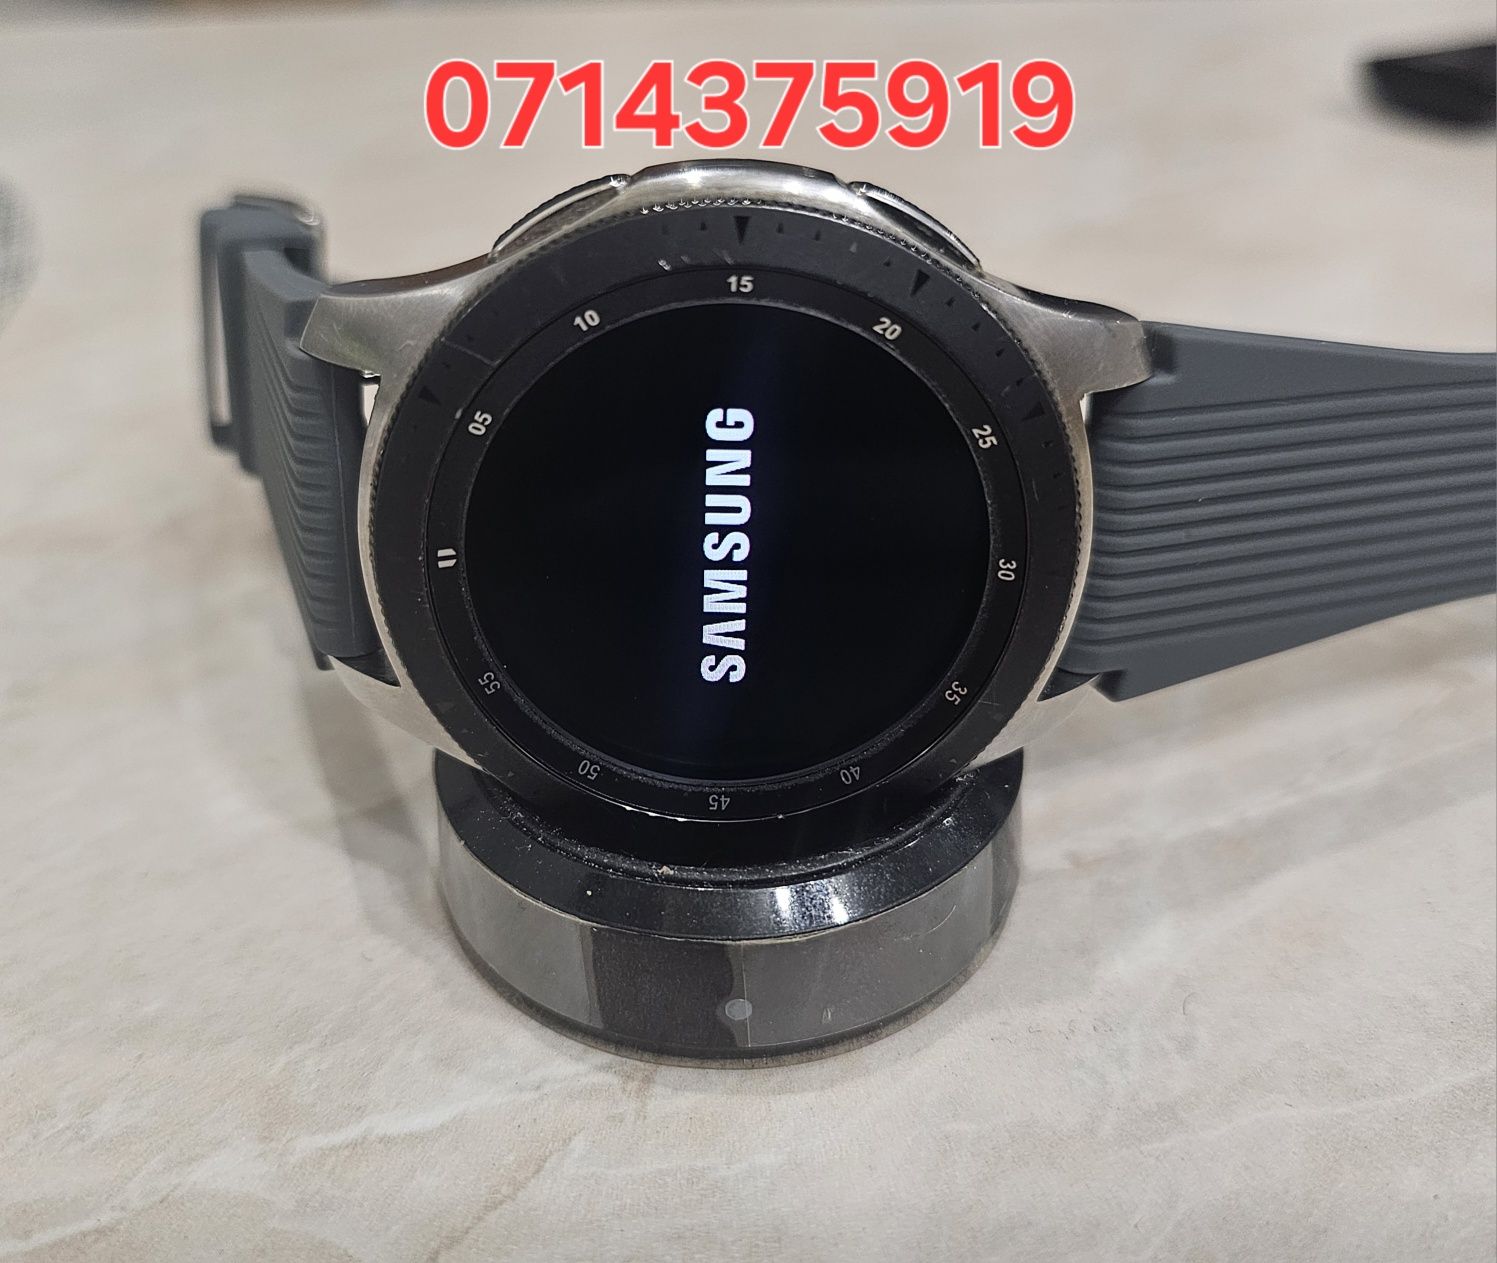 Samsung Galaxy Watch classic 46mm.